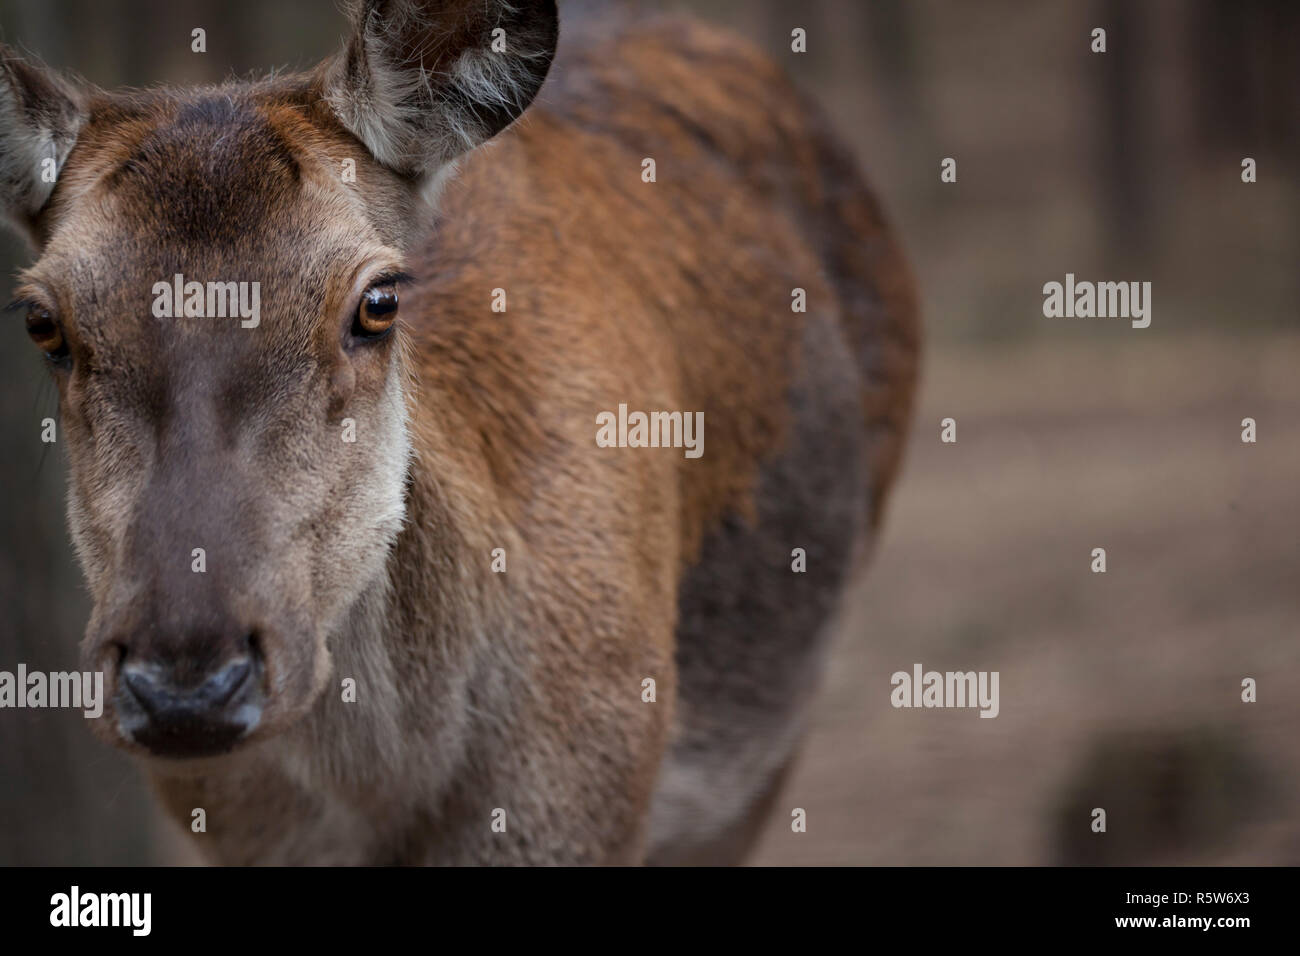 deer close-up Stock Photo